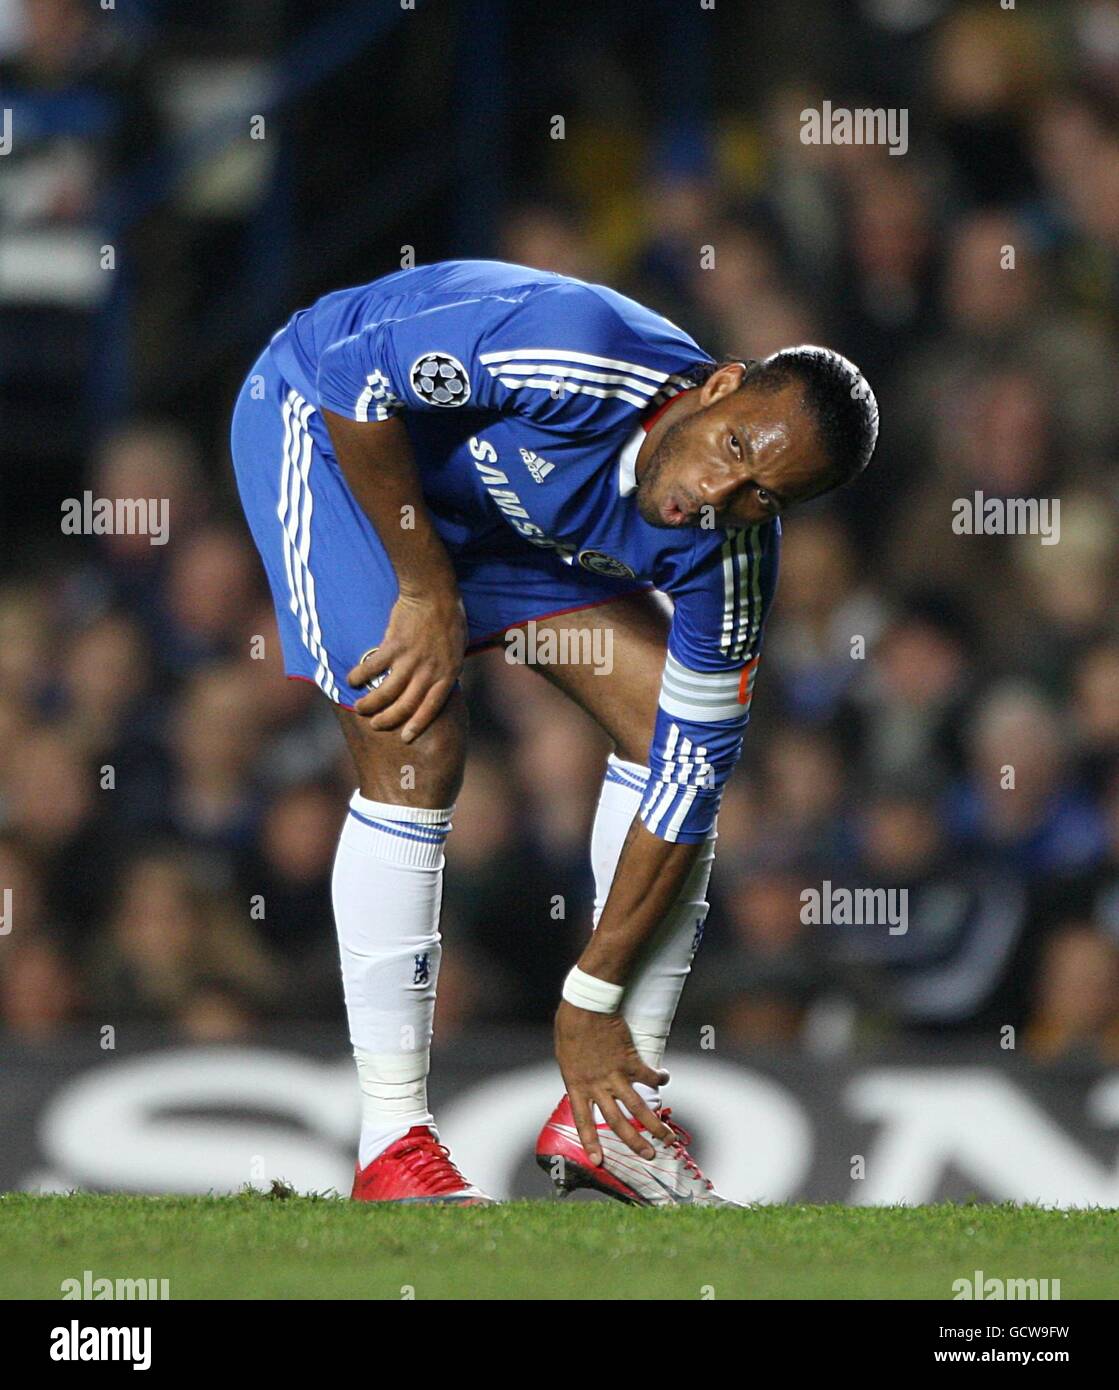 Fútbol - Liga de Campeones de la UEFA - Grupo F - Chelsea contra MSK Zilina - Stamford Bridge. Didier Drogba de Chelsea lucha con una lesión Foto de stock